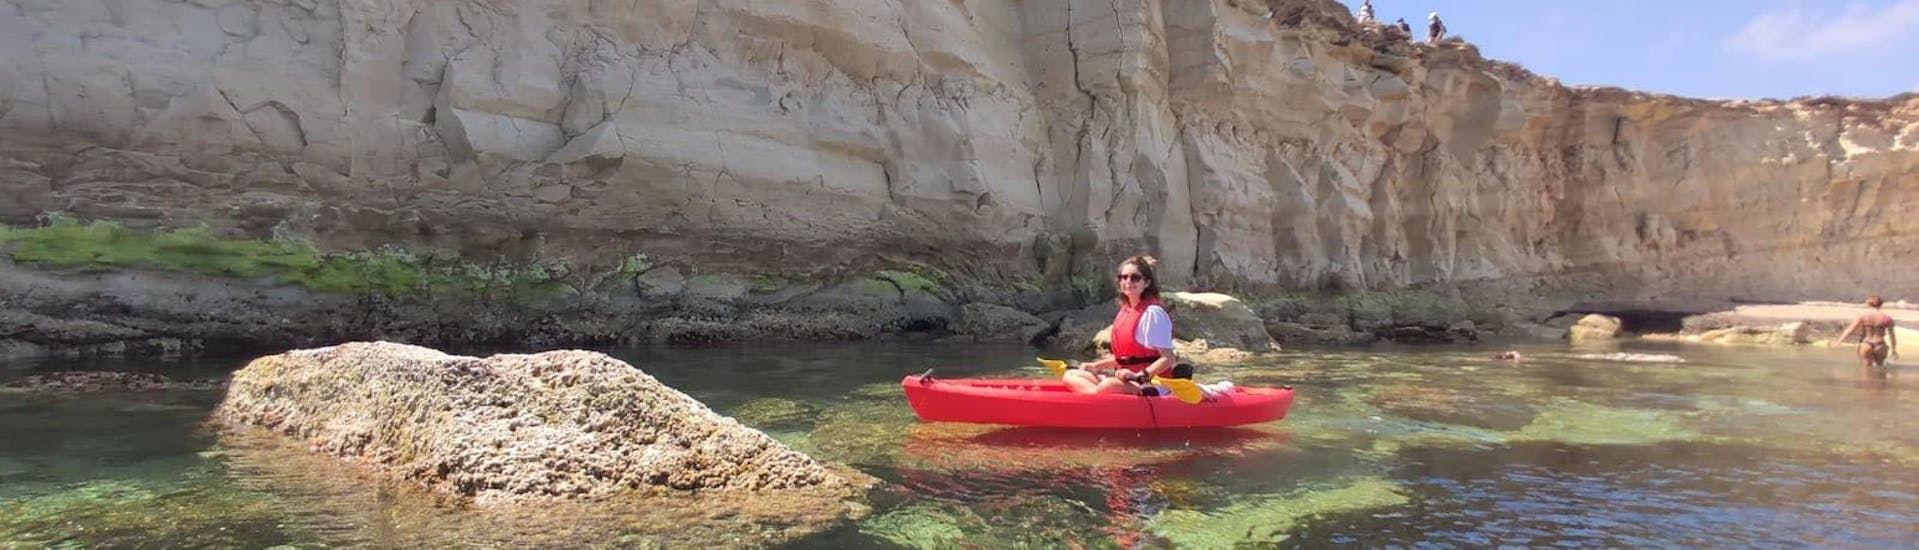 Une personne fait une Location de kayak de mer dans la baie de Saint-Thomas avec SIPS Watersports Malte.